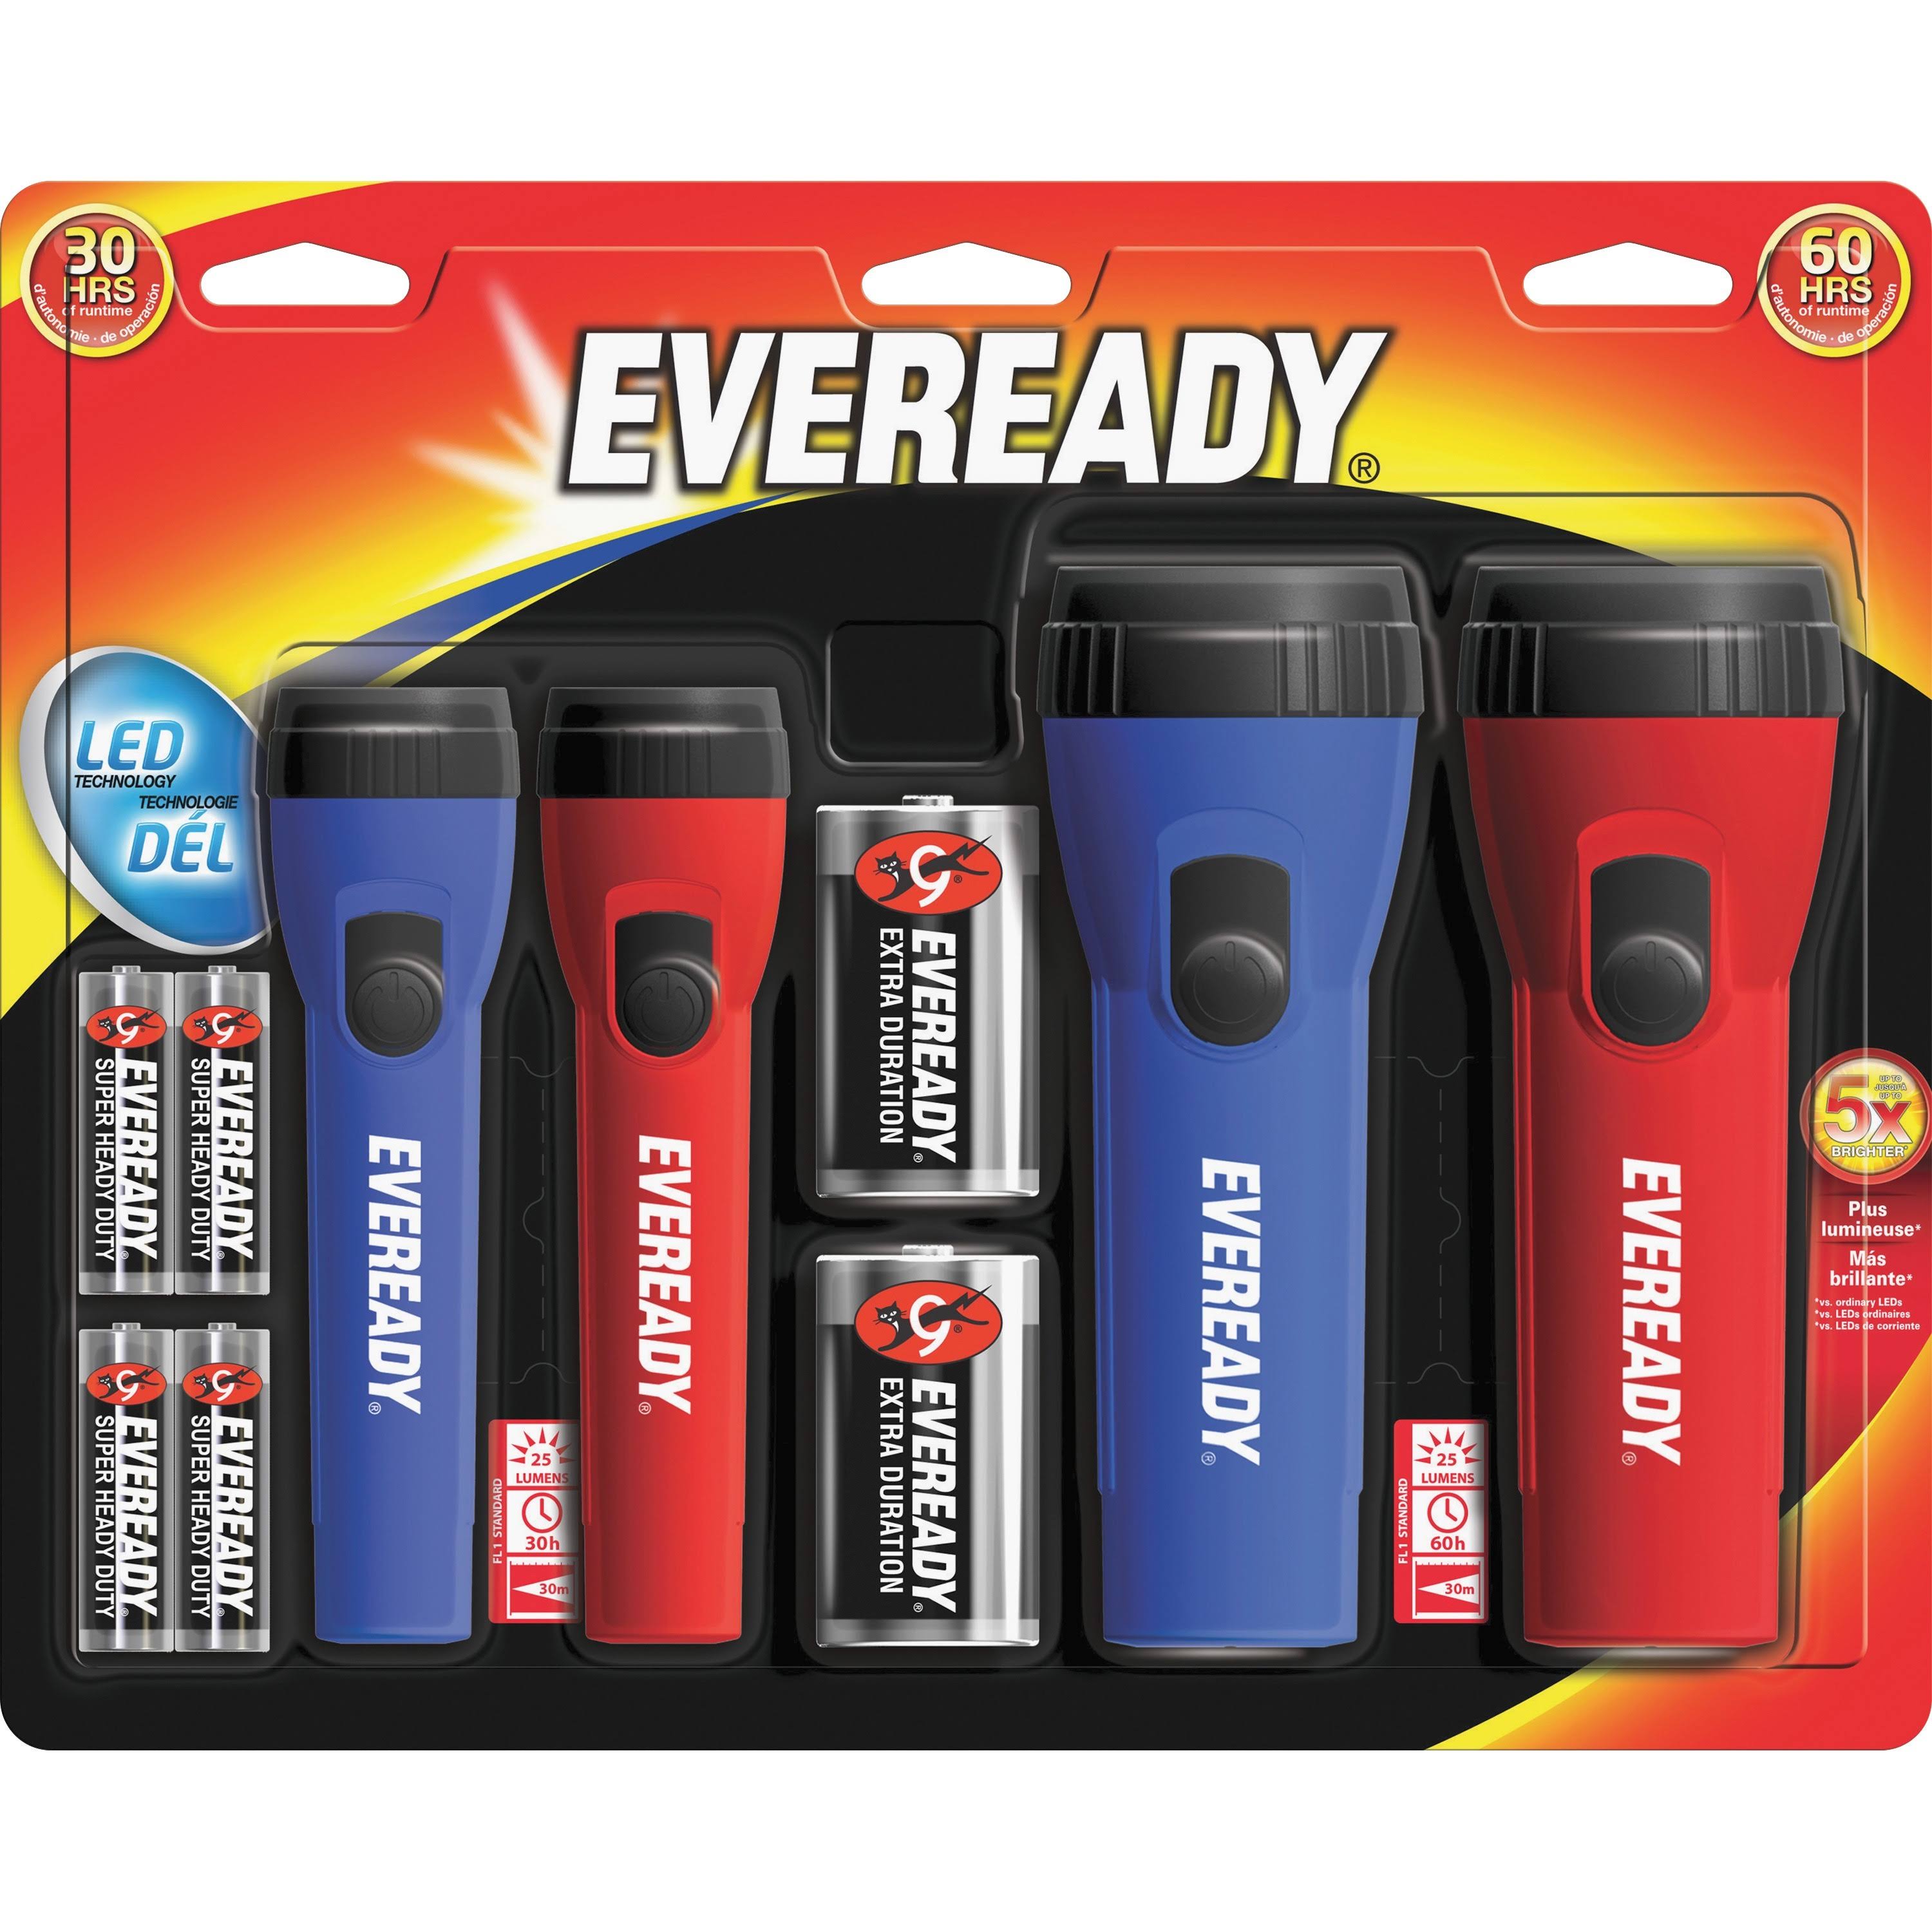 Eveready LED Flashlights - 4 Pack